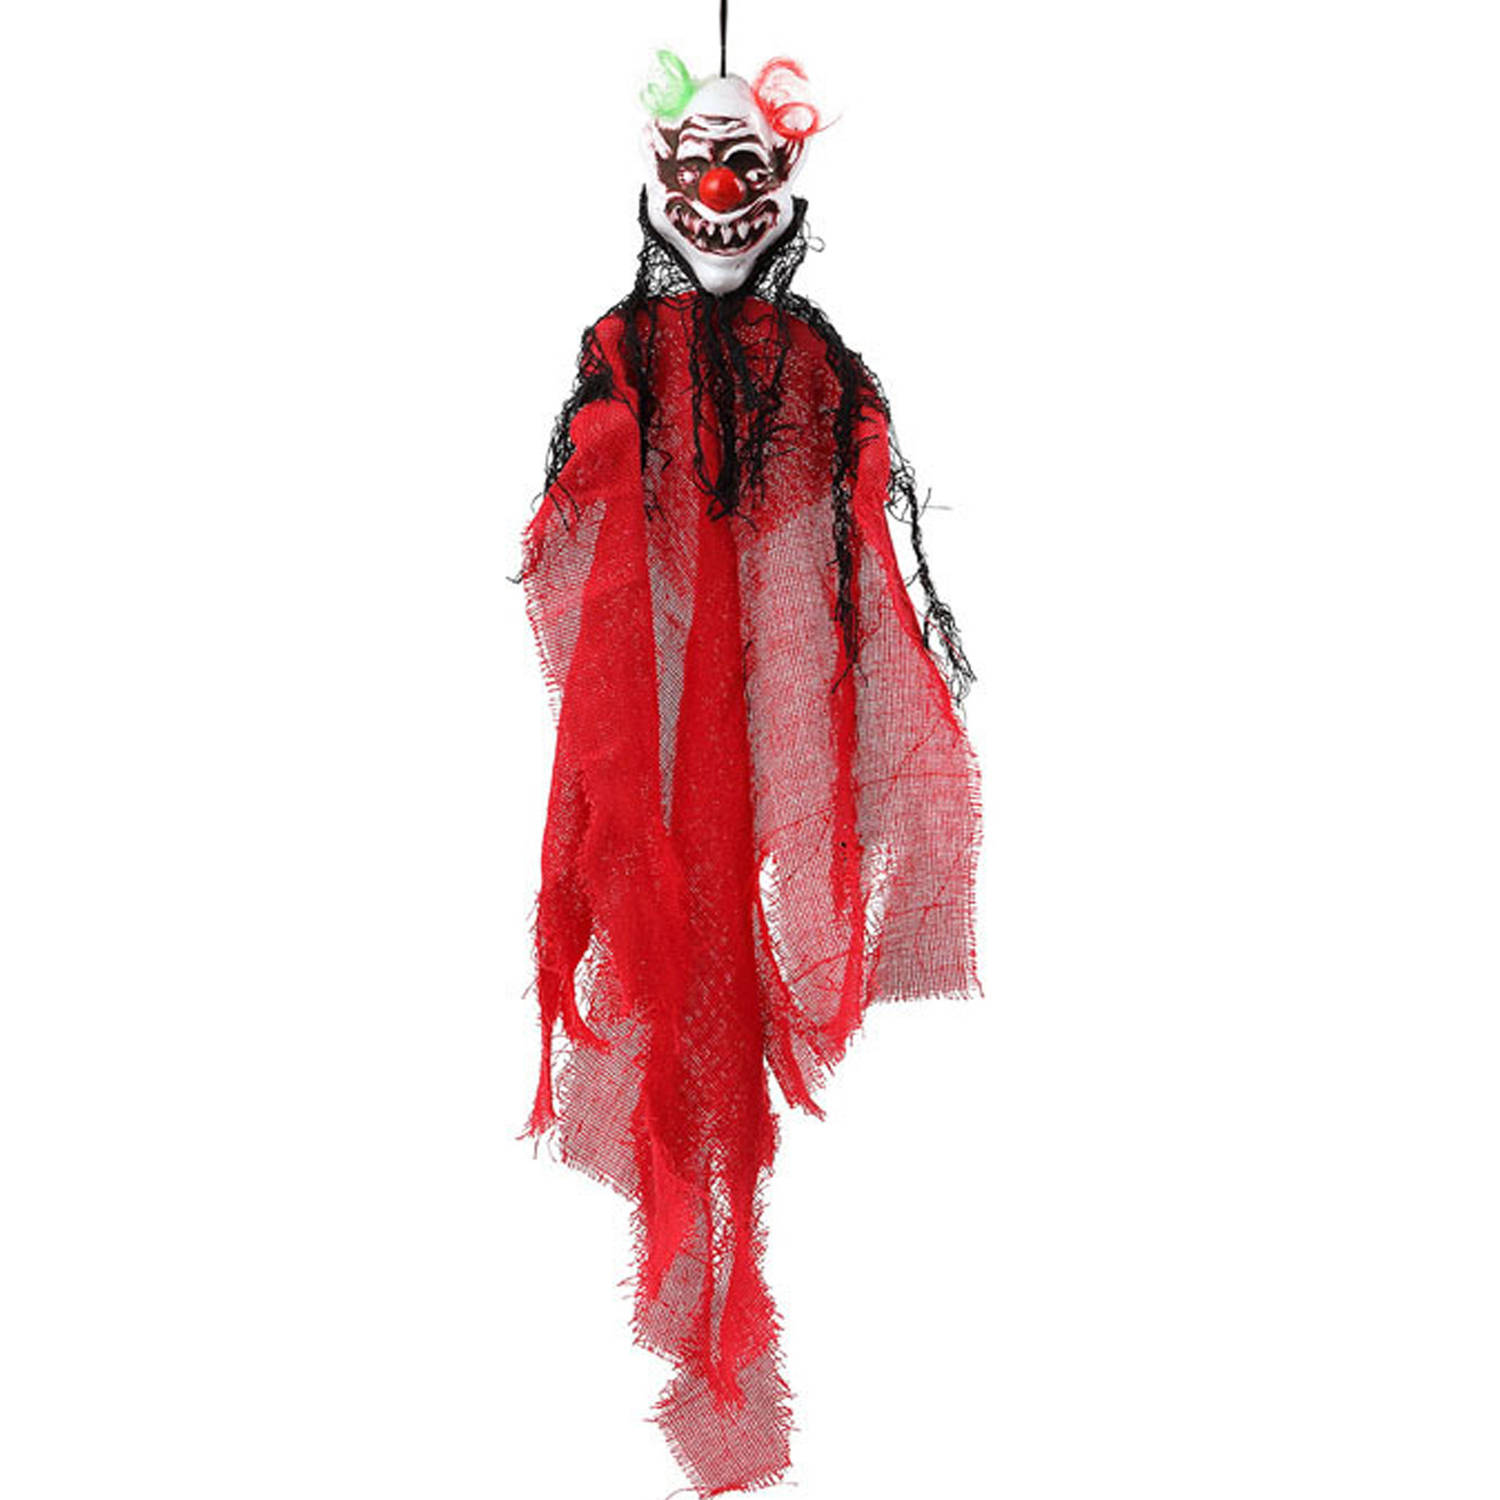 Halloween/horror thema hang decoratie horror clown - enge/griezelige pop - 60 cm